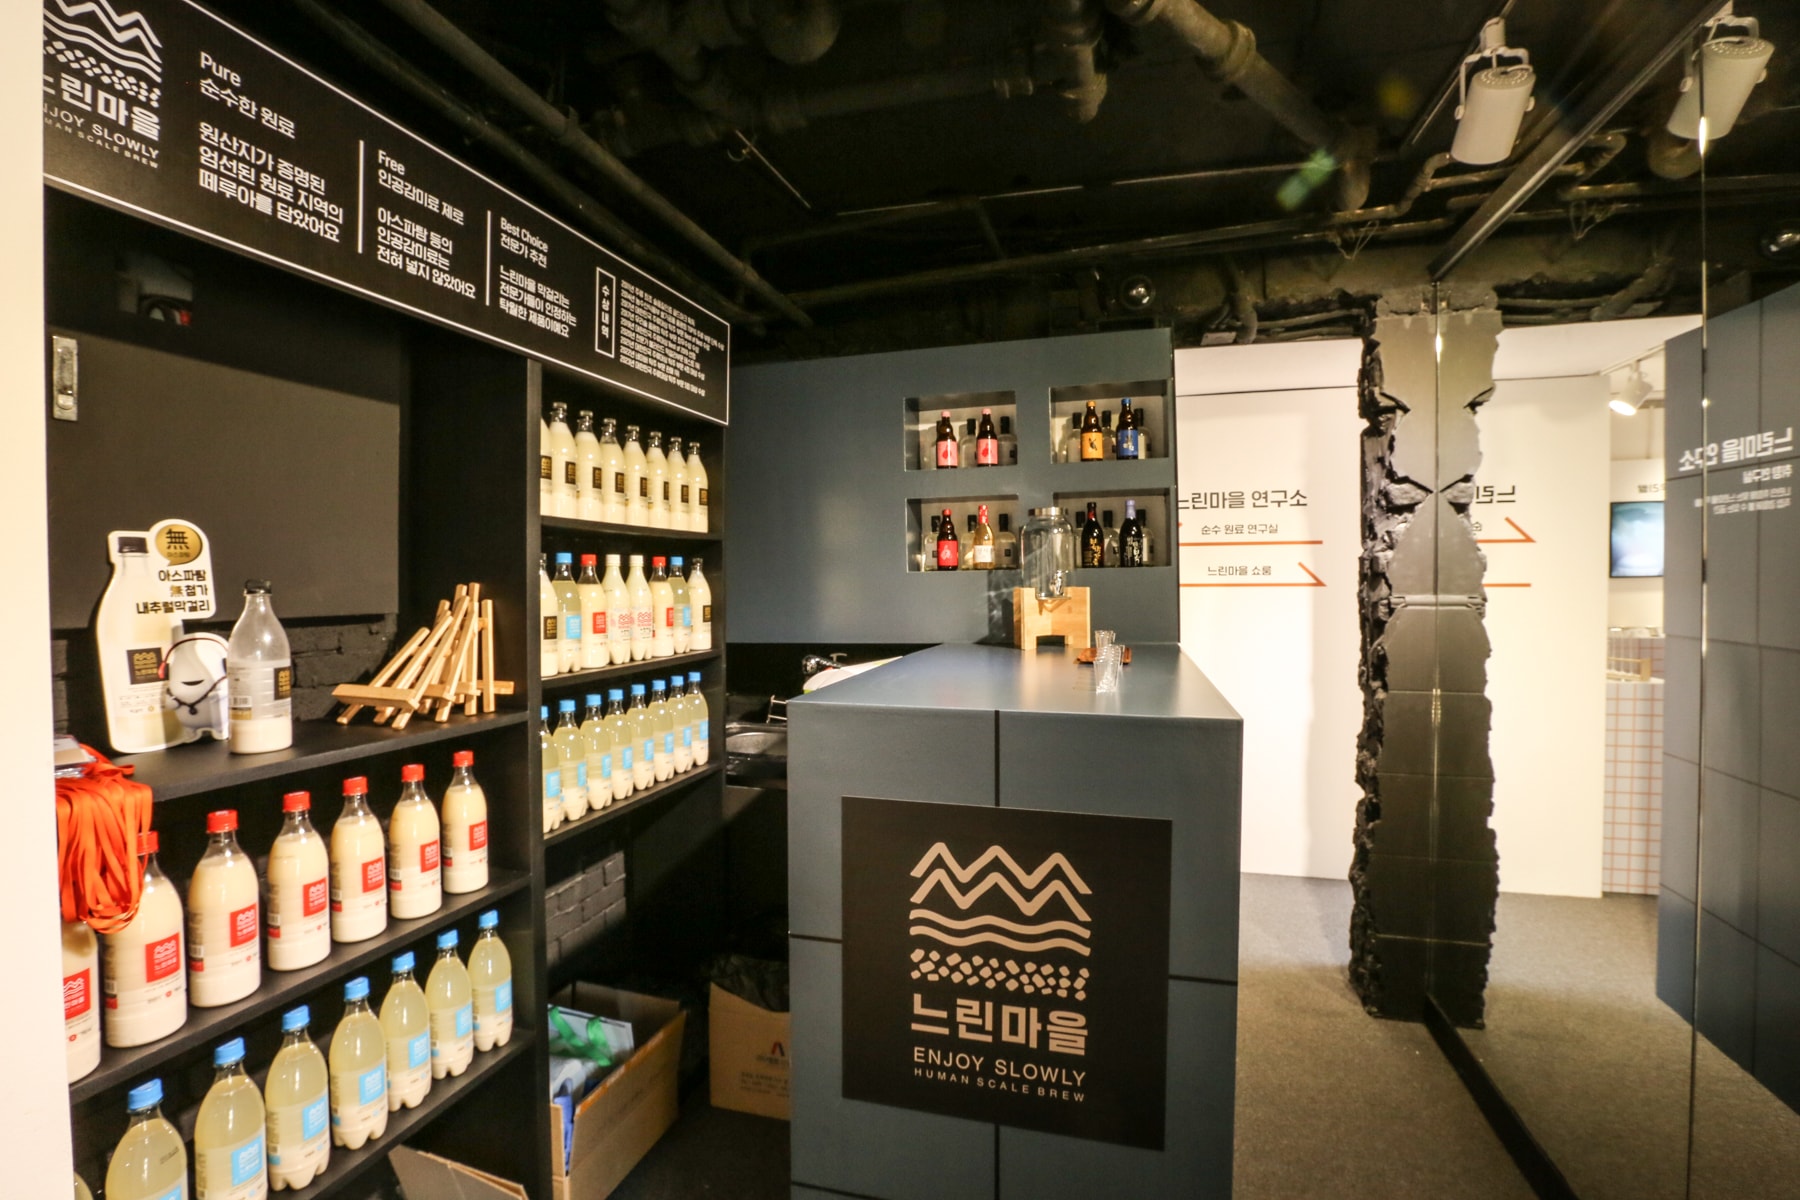 배상면주가, ‘느린마을 연구소’ 팝업 스토어 오픈 baesangmyun brewery pop up store open 성수 성수동